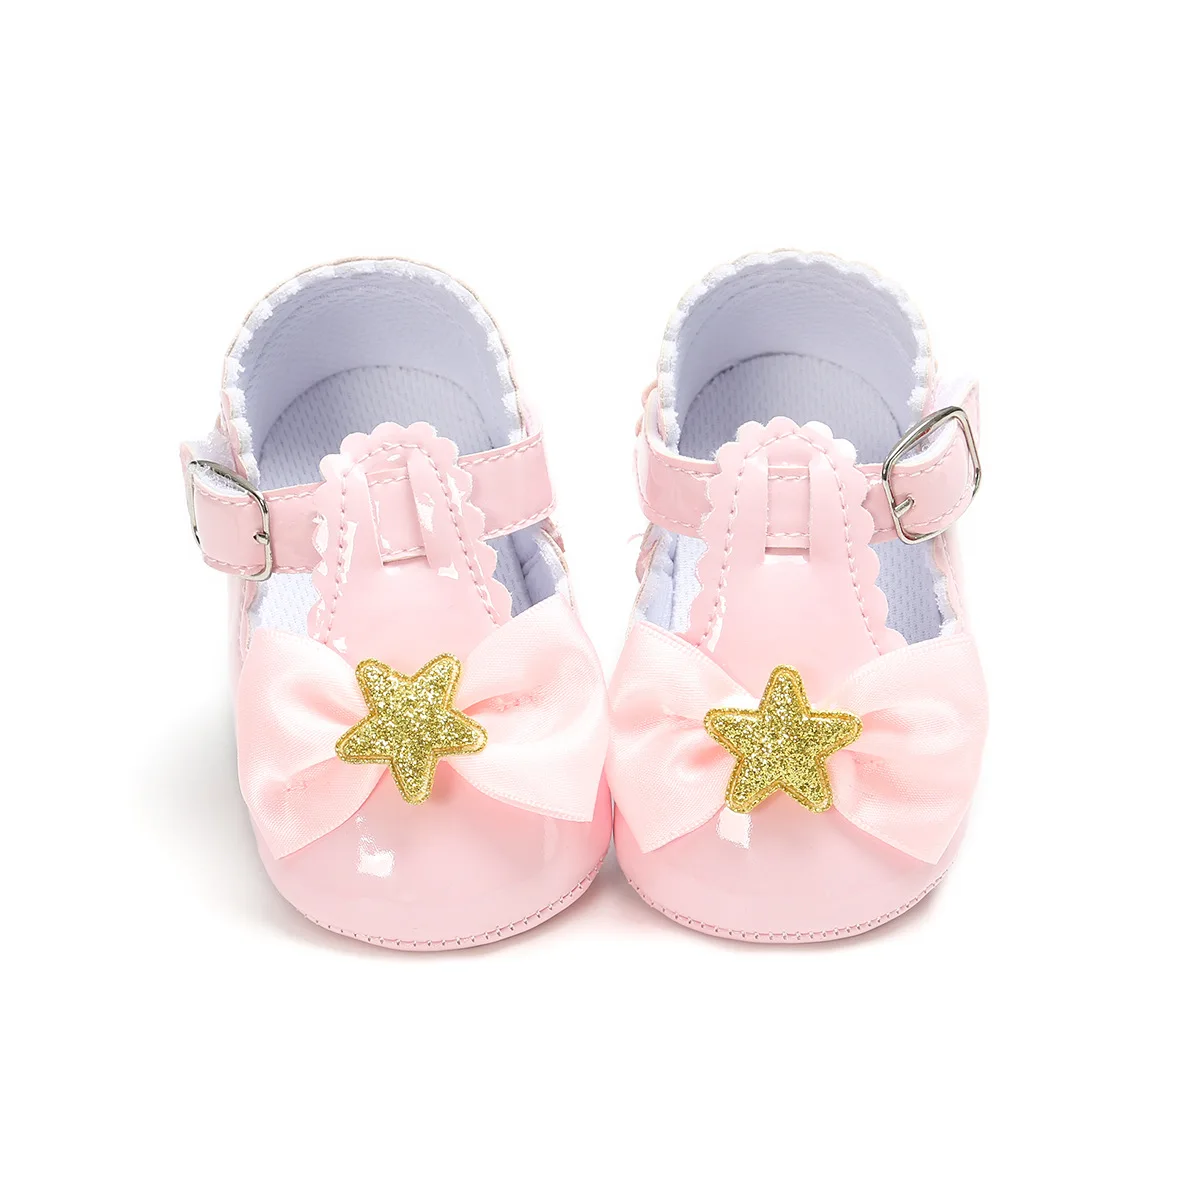 Г. Новая обувь принцессы для маленьких девочек из искусственной кожи, для детей Выходные туфли для девочки новорожденных Bebe Первые ходунки Прямая поставка - Цвет: Pink